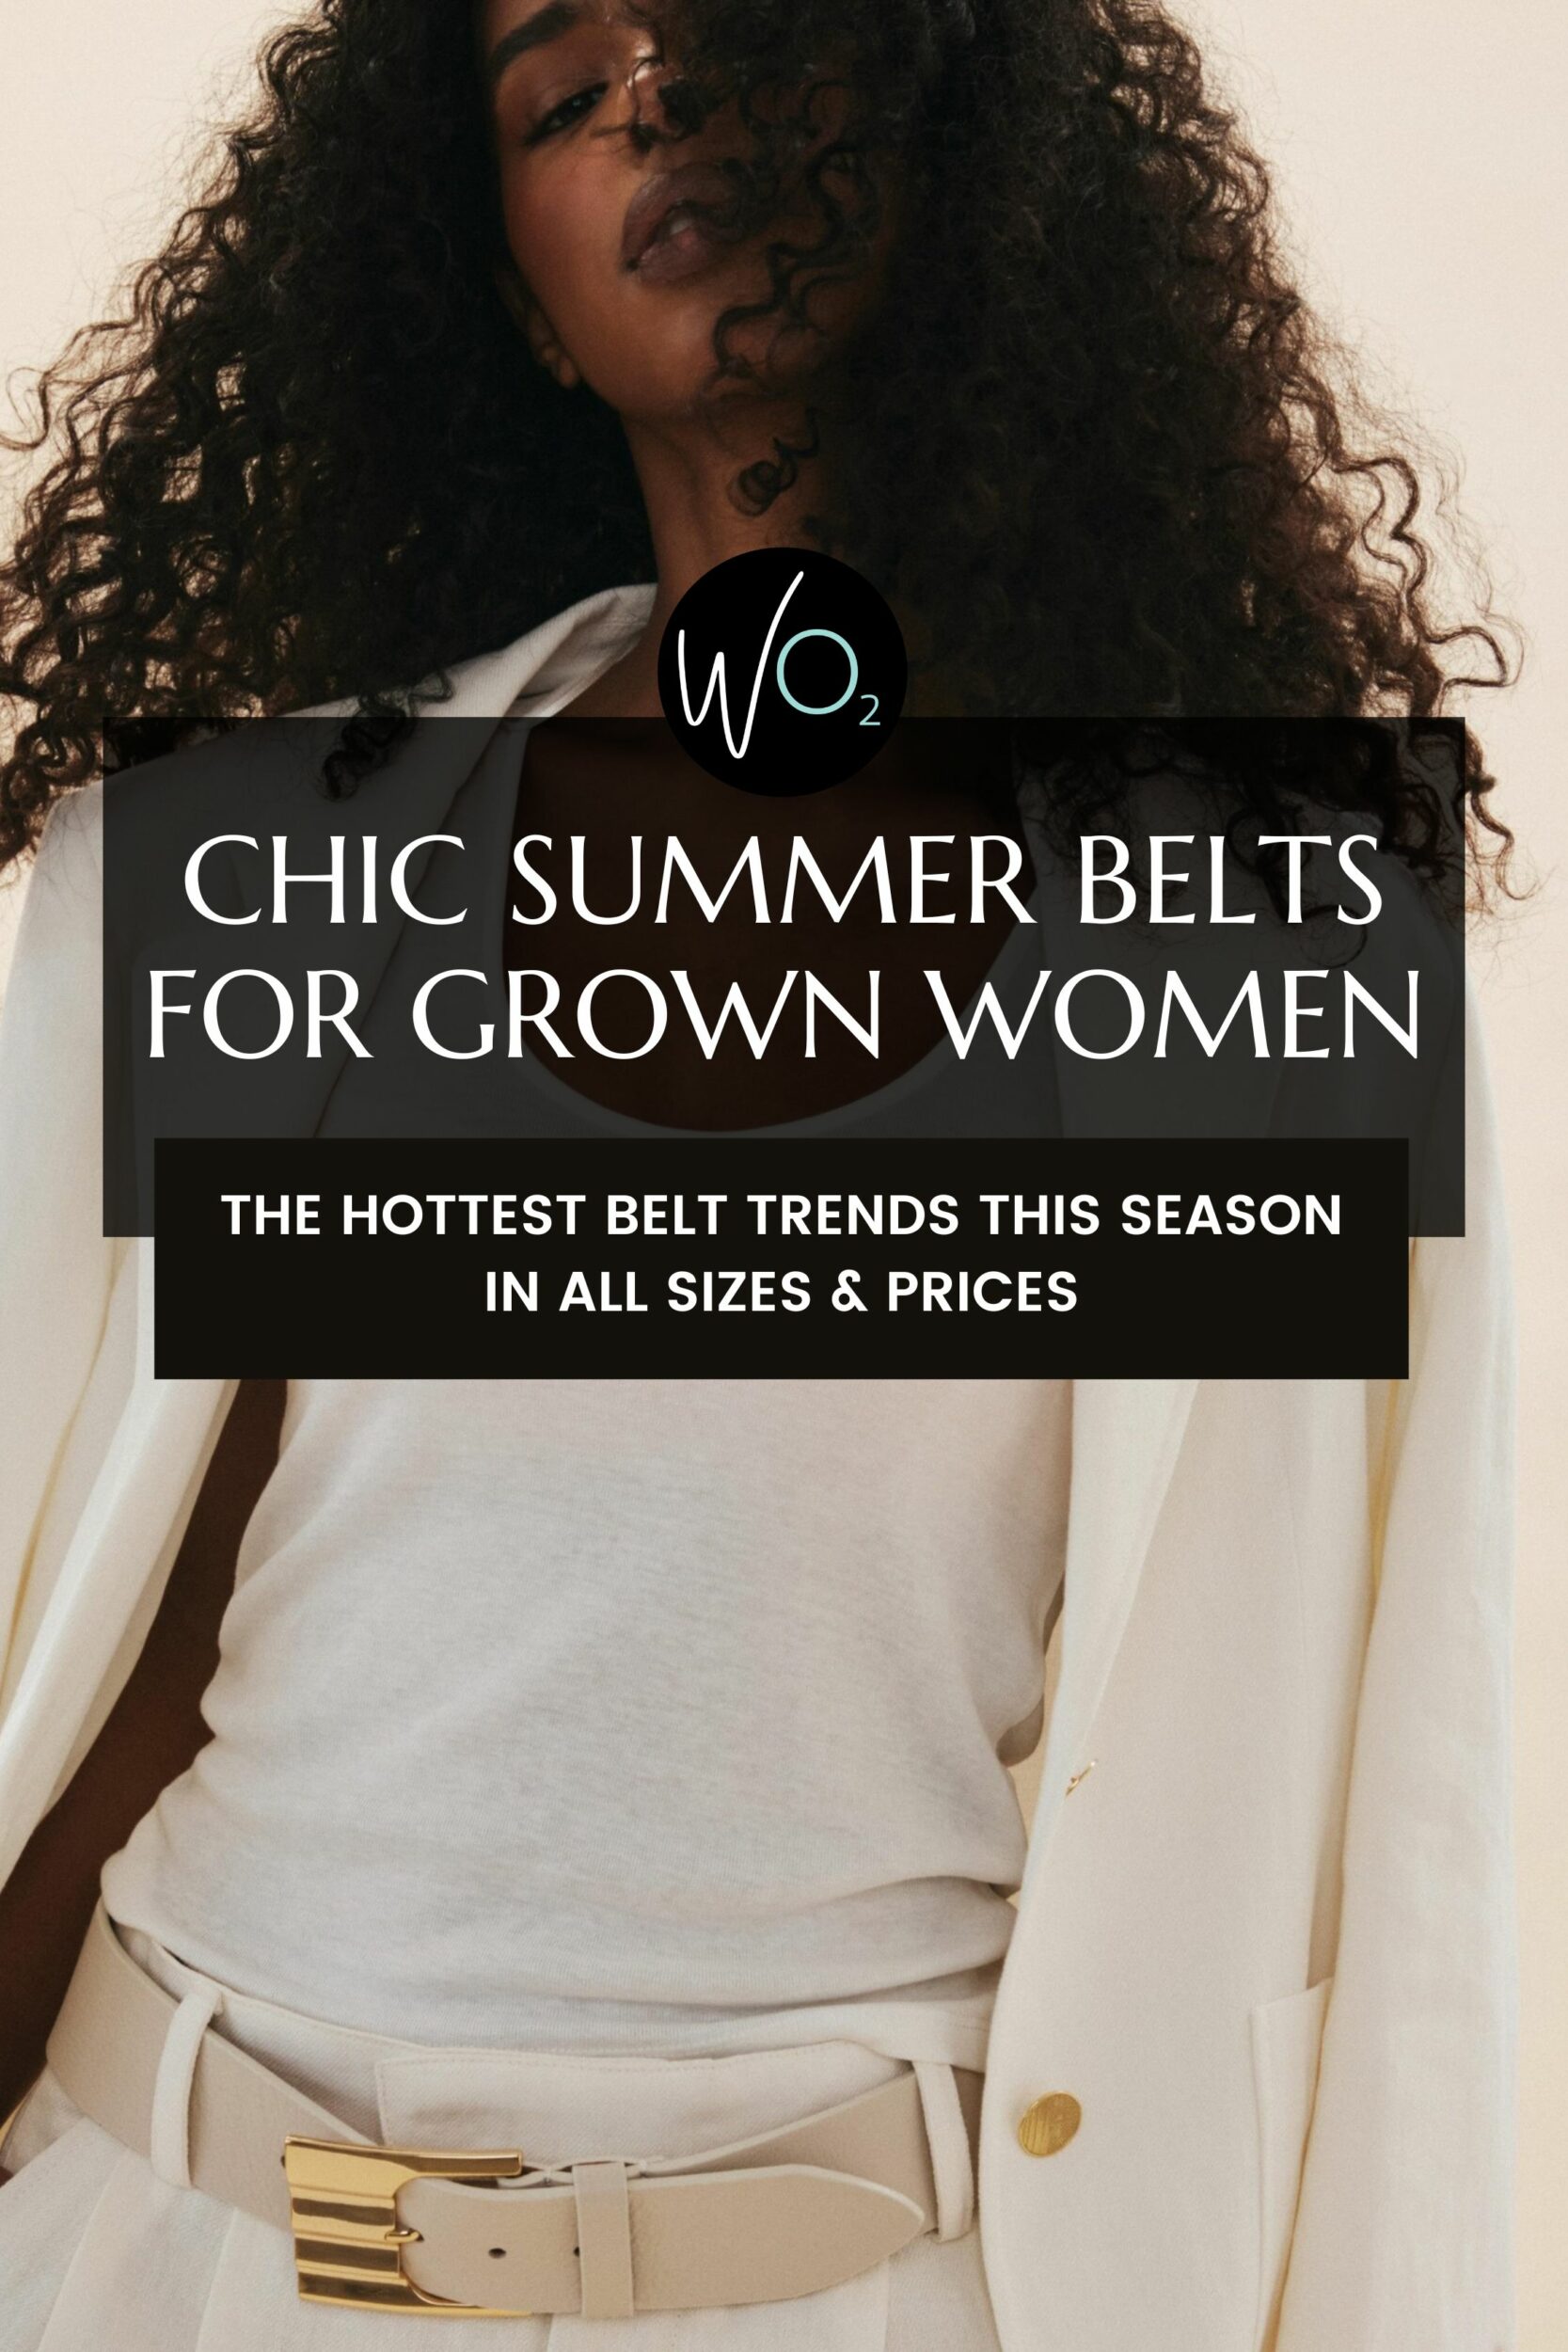 Chic Summer Belts for Grown Women | Wardrobe Oxygen